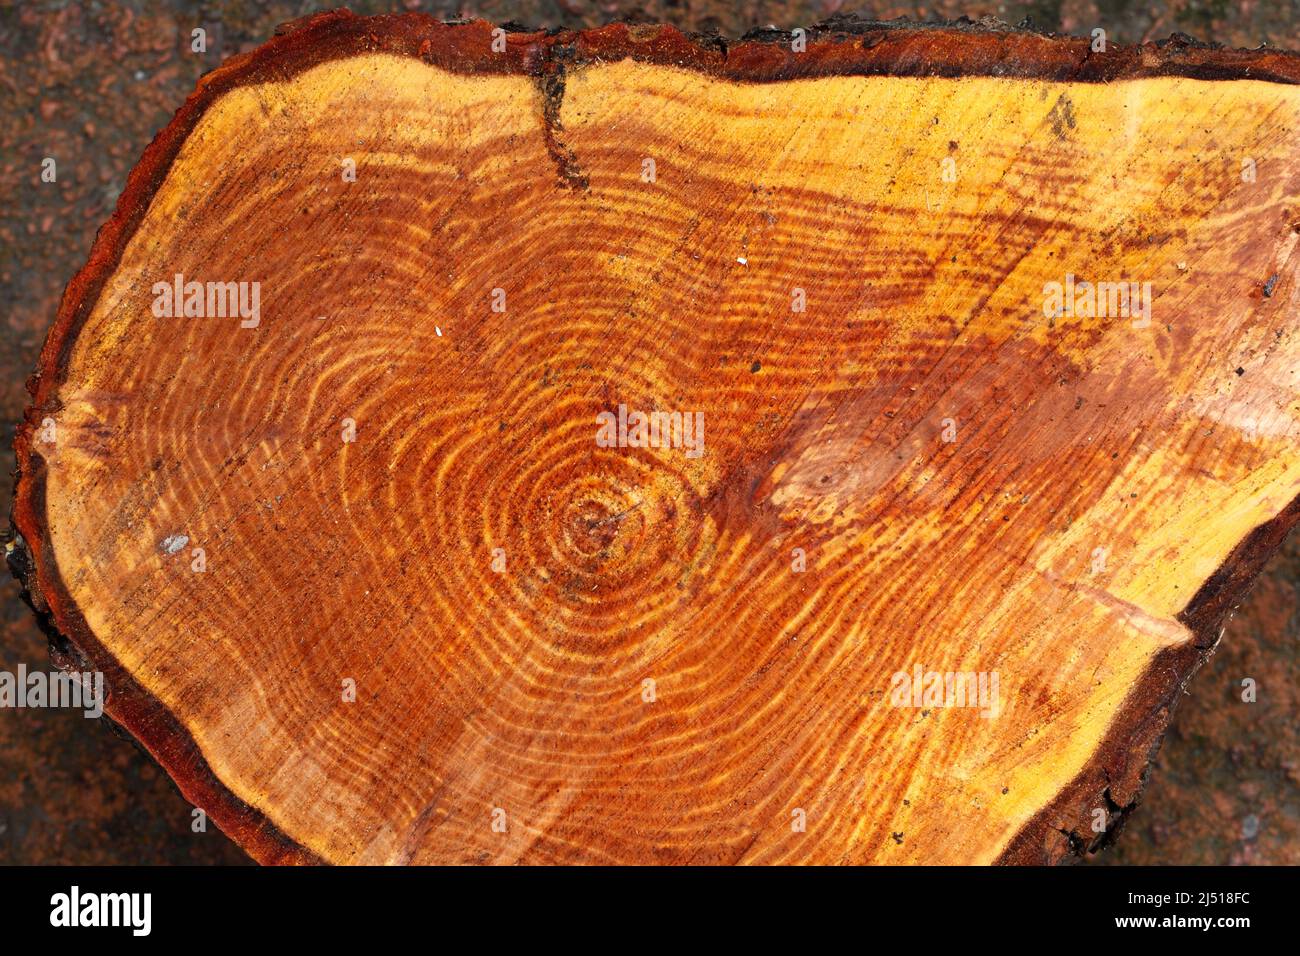 Corte el tronco del árbol mostrando anillos, corteza y color de madera interna. - Alnus glutinosa 'imperialis' Alder de hoja cortada. Foto de stock